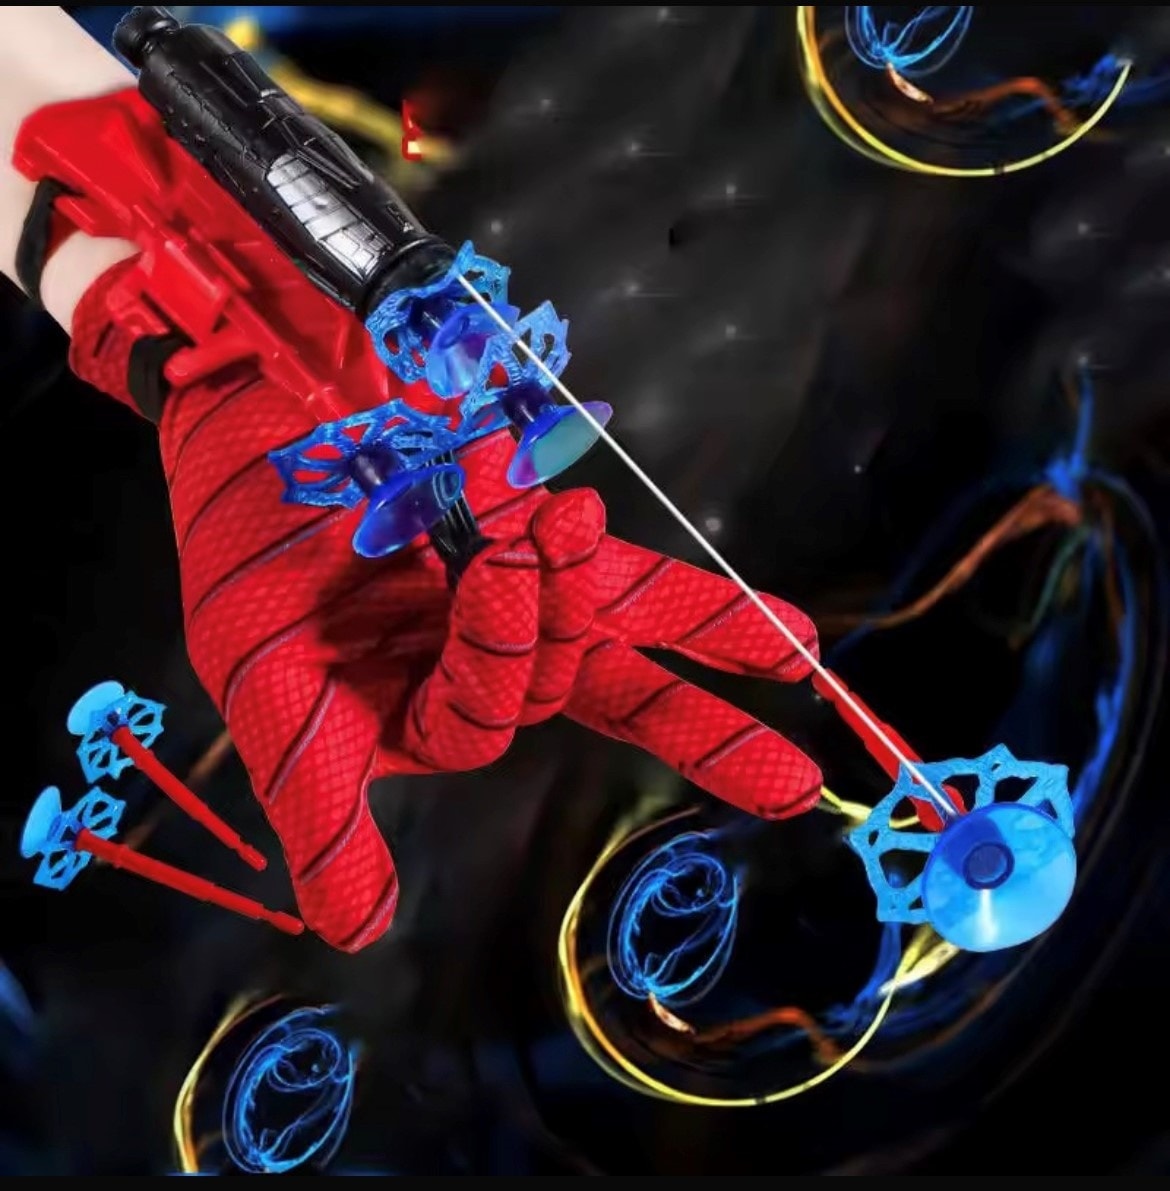 Spiderman Nätskjutare - Skjuter ut sugkoppar för Barn  (2 av 8)